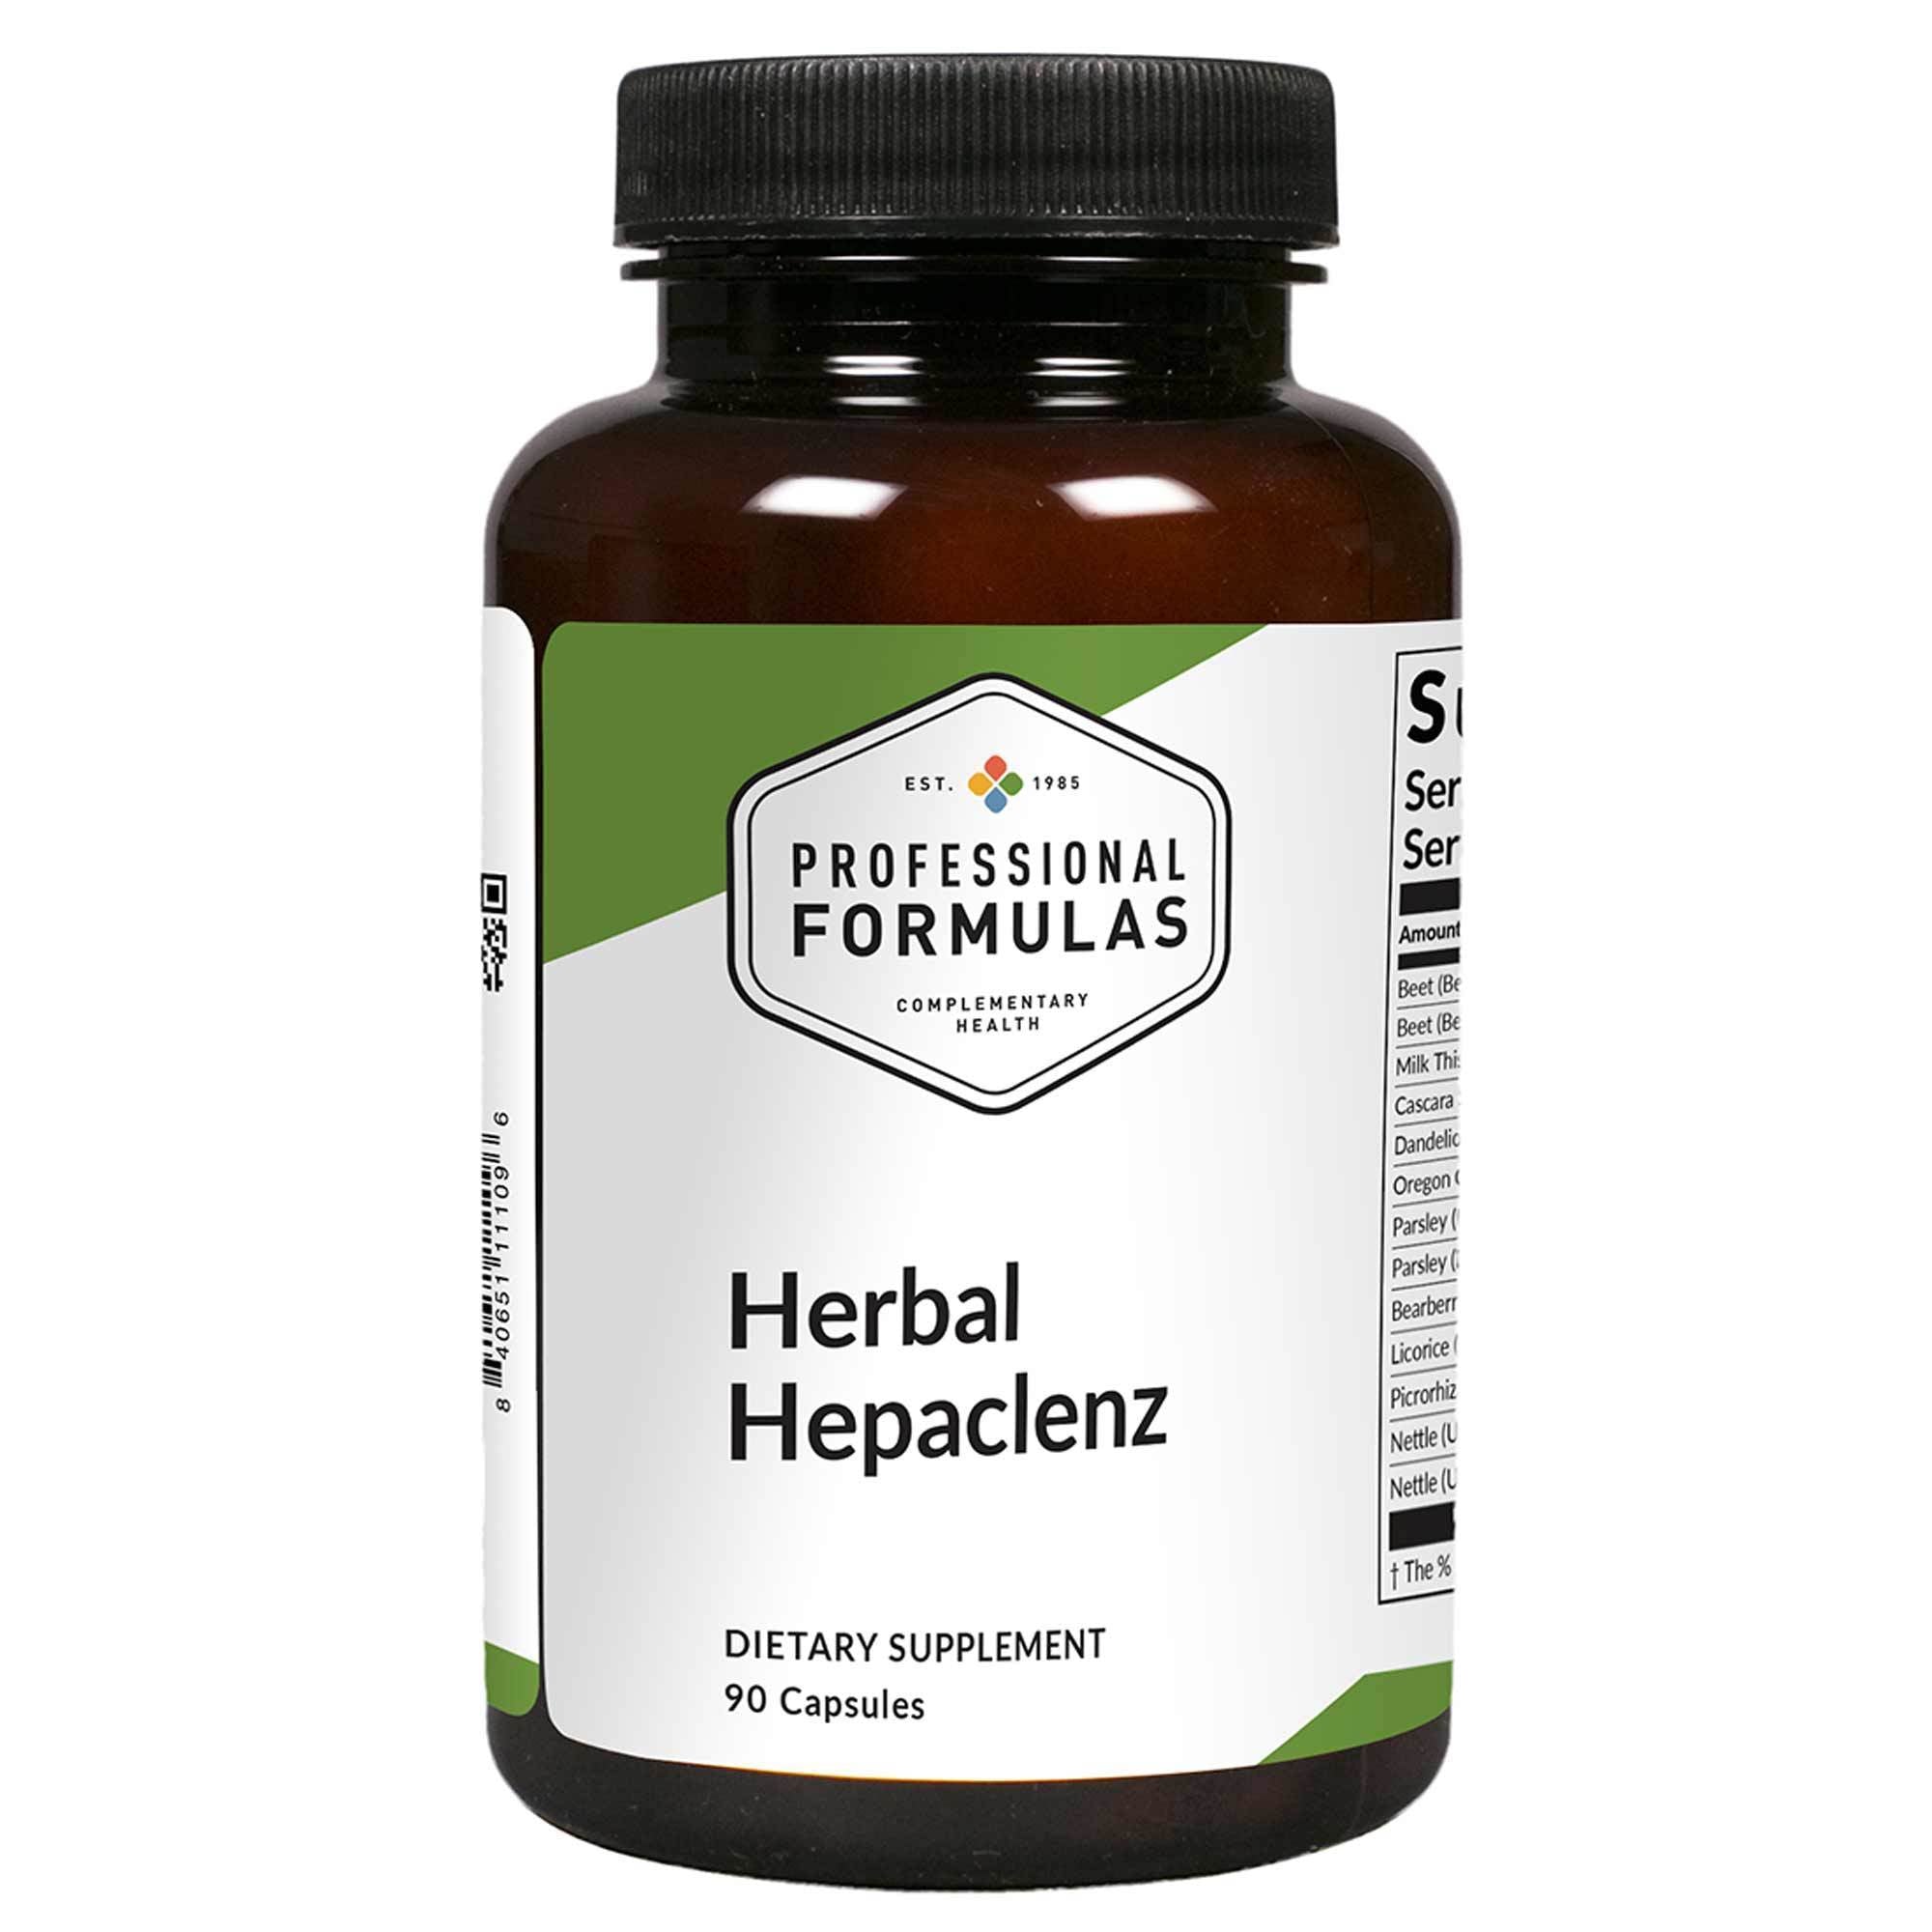 Professional Formulas Herbal Hepaclenz 90 Capsules - 2 Pack